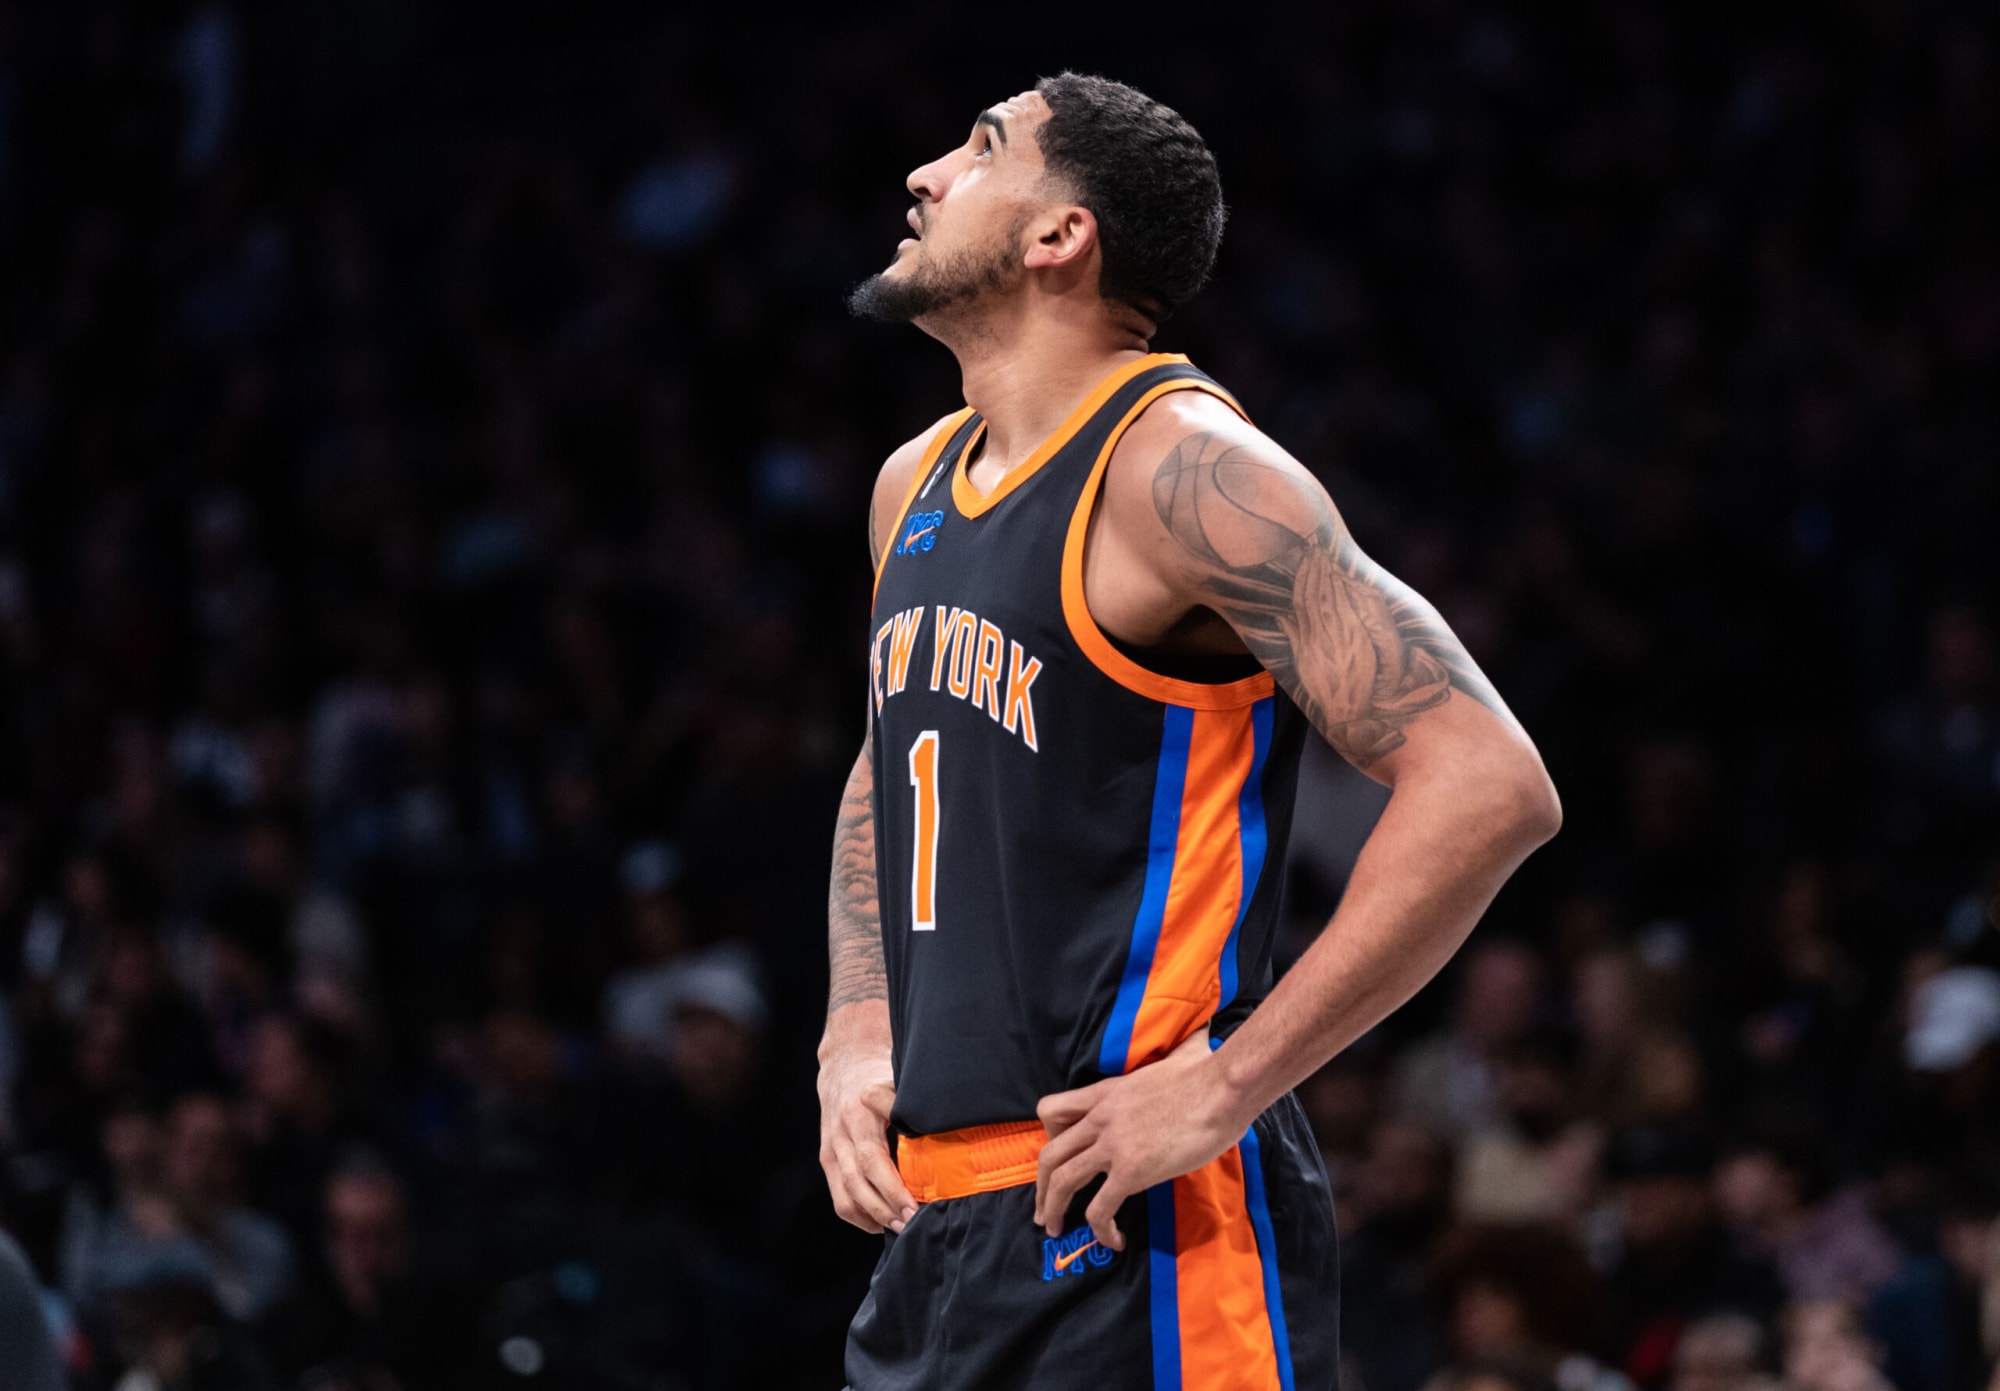 2023 NBA Draft: Kentucky's Jacob Toppin to join NY Knicks